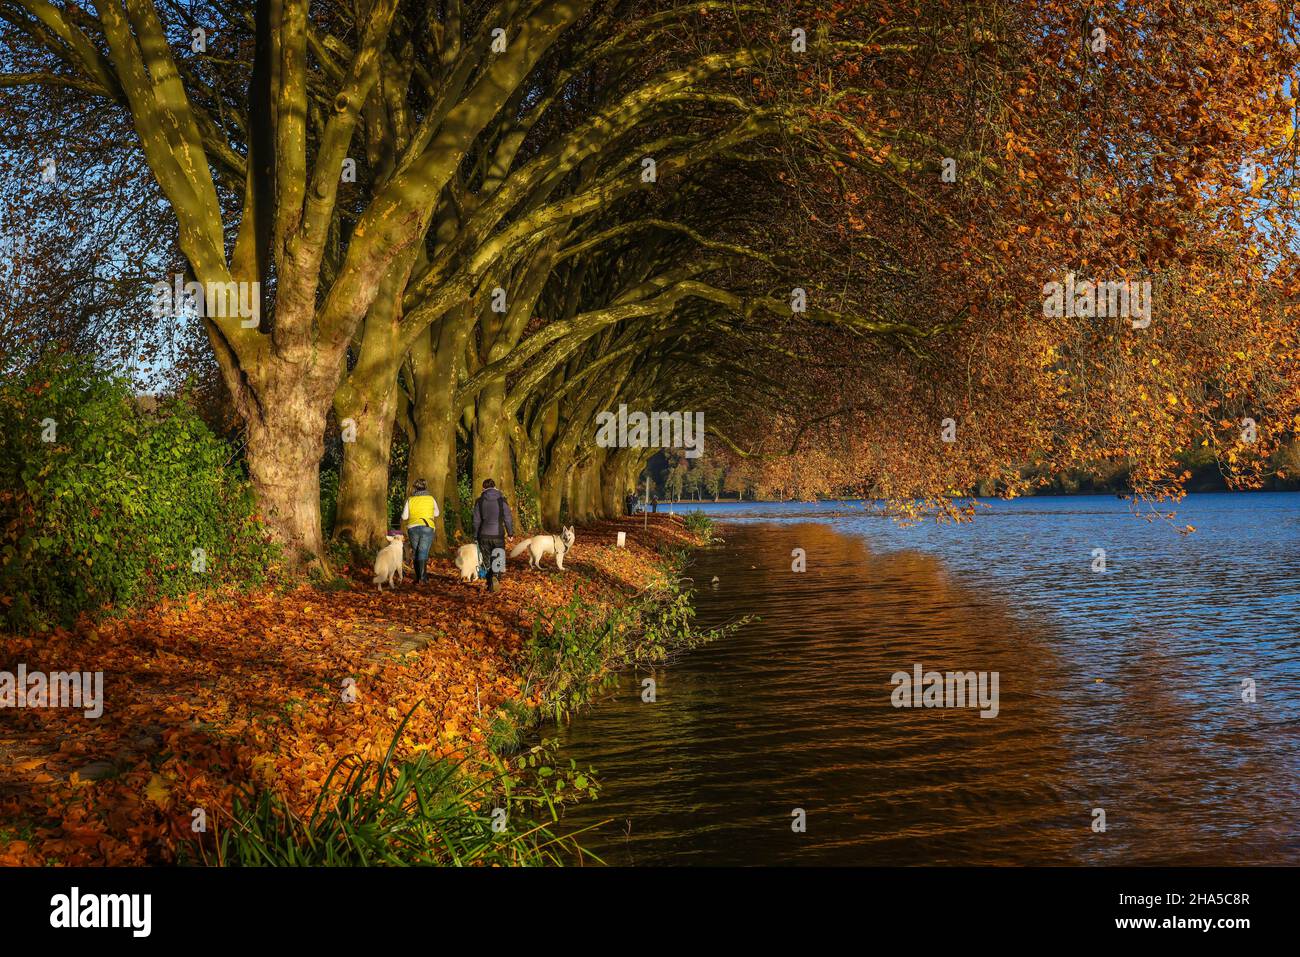 essen, Nordrhein-westfalen, deutschland - Hundebesitzer wandern am Seeufer unter Bäumen mit Herbstblättern. goldener Herbst am baldeneysee. Stockfoto